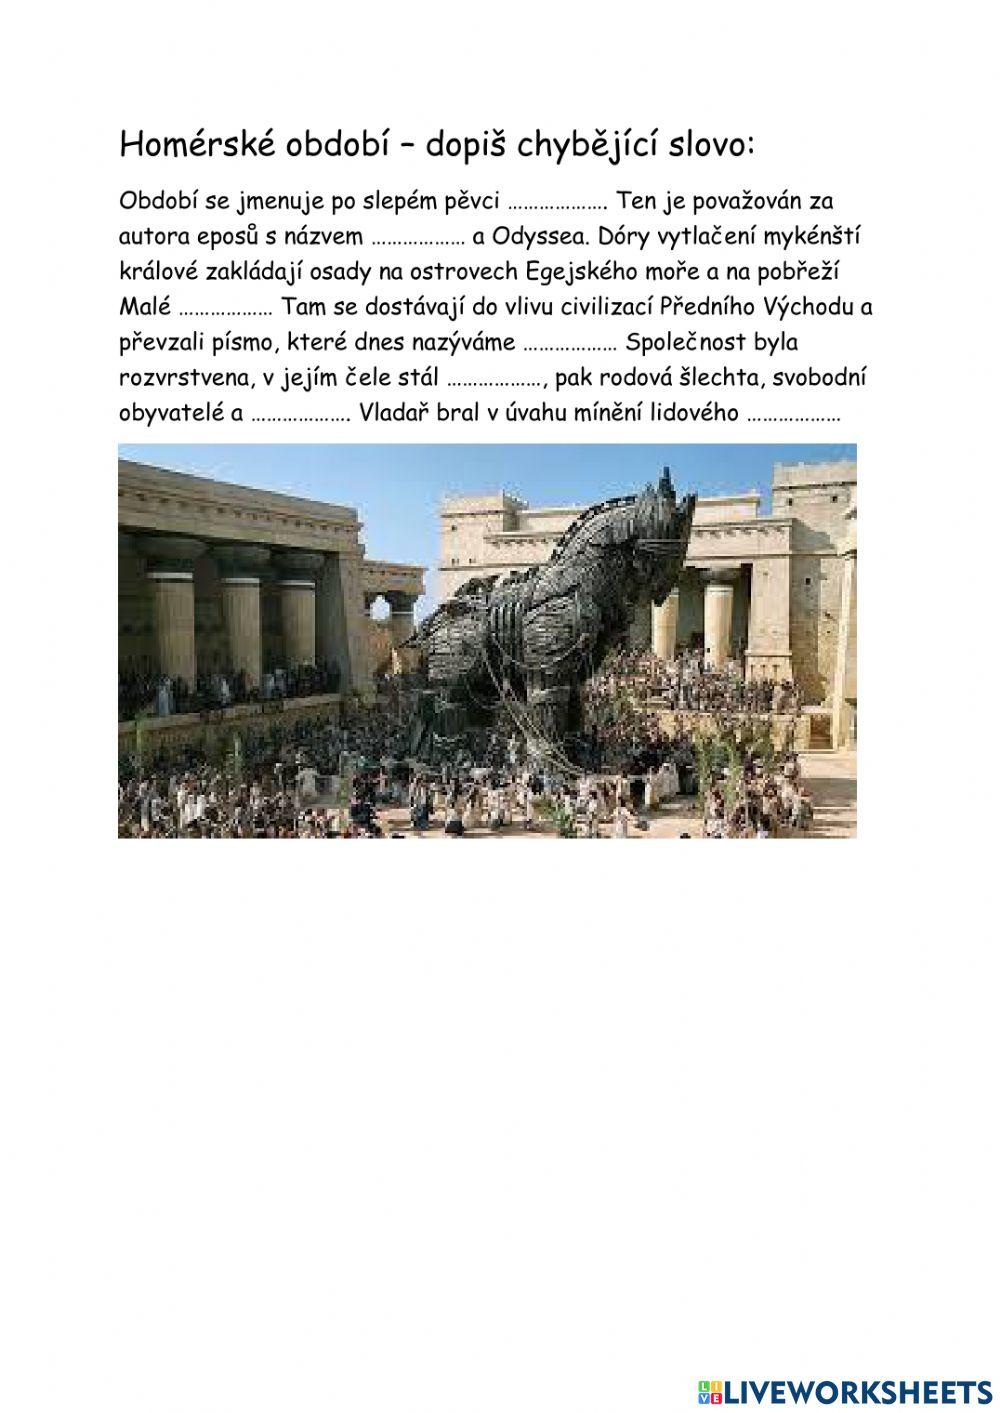 Starověké Řecko